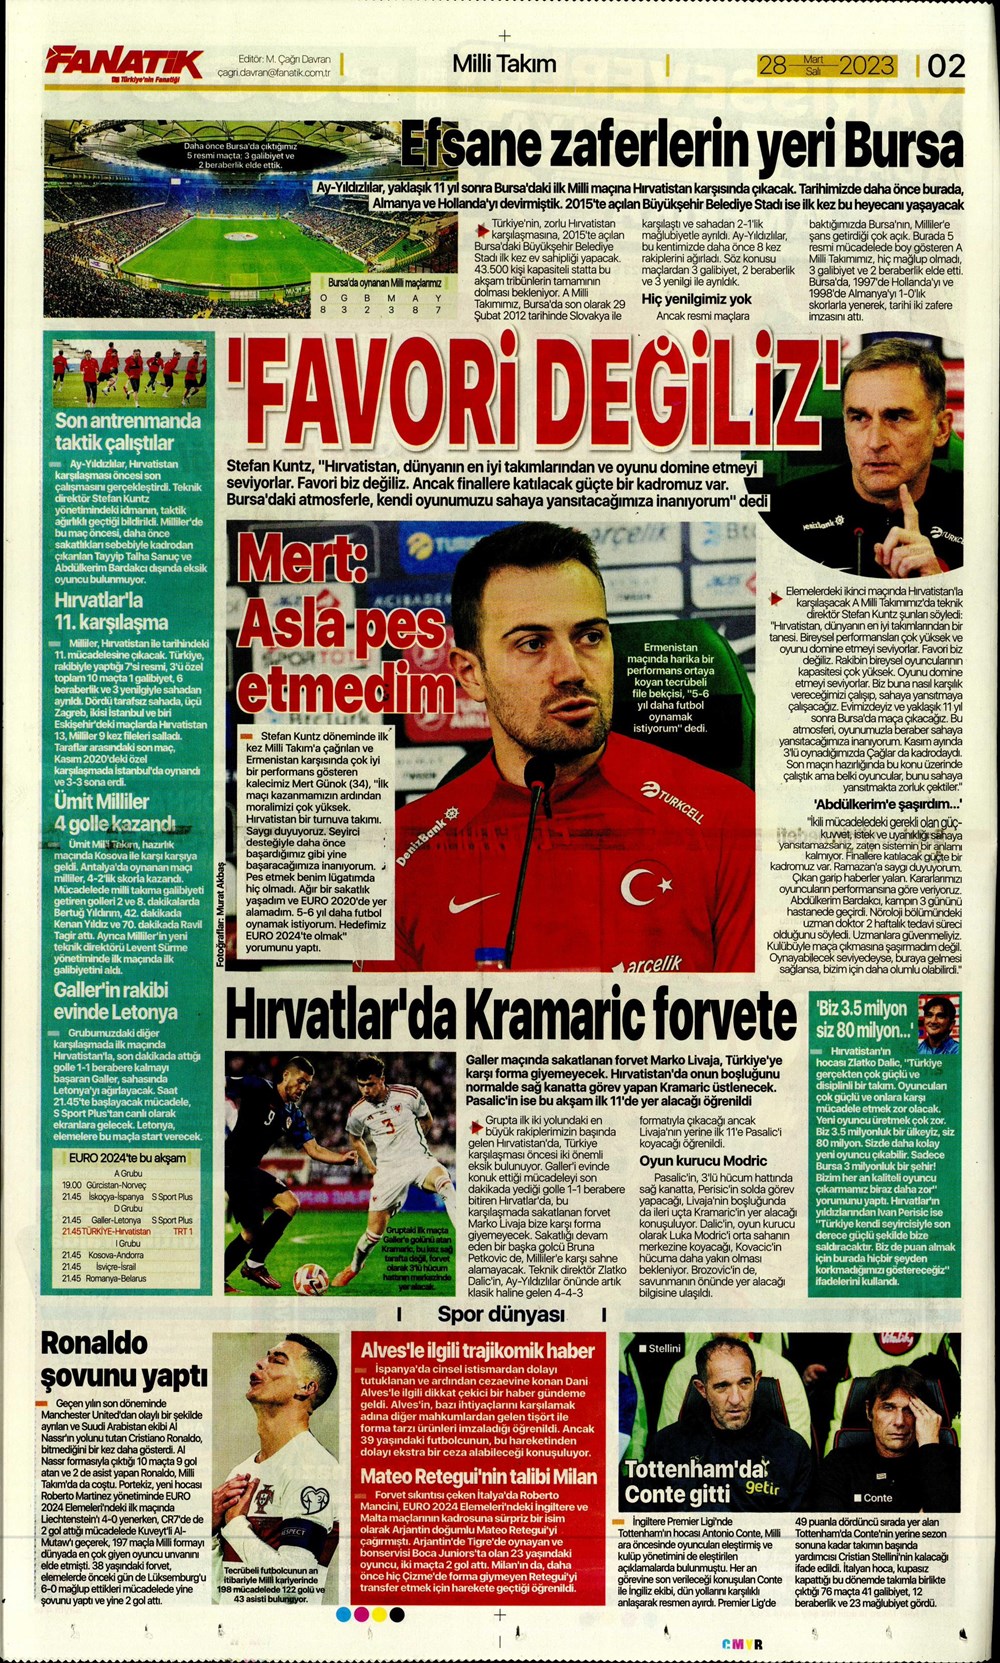 "Vurduğumuz gol olsun" - Sporun manşetleri - 5. Foto